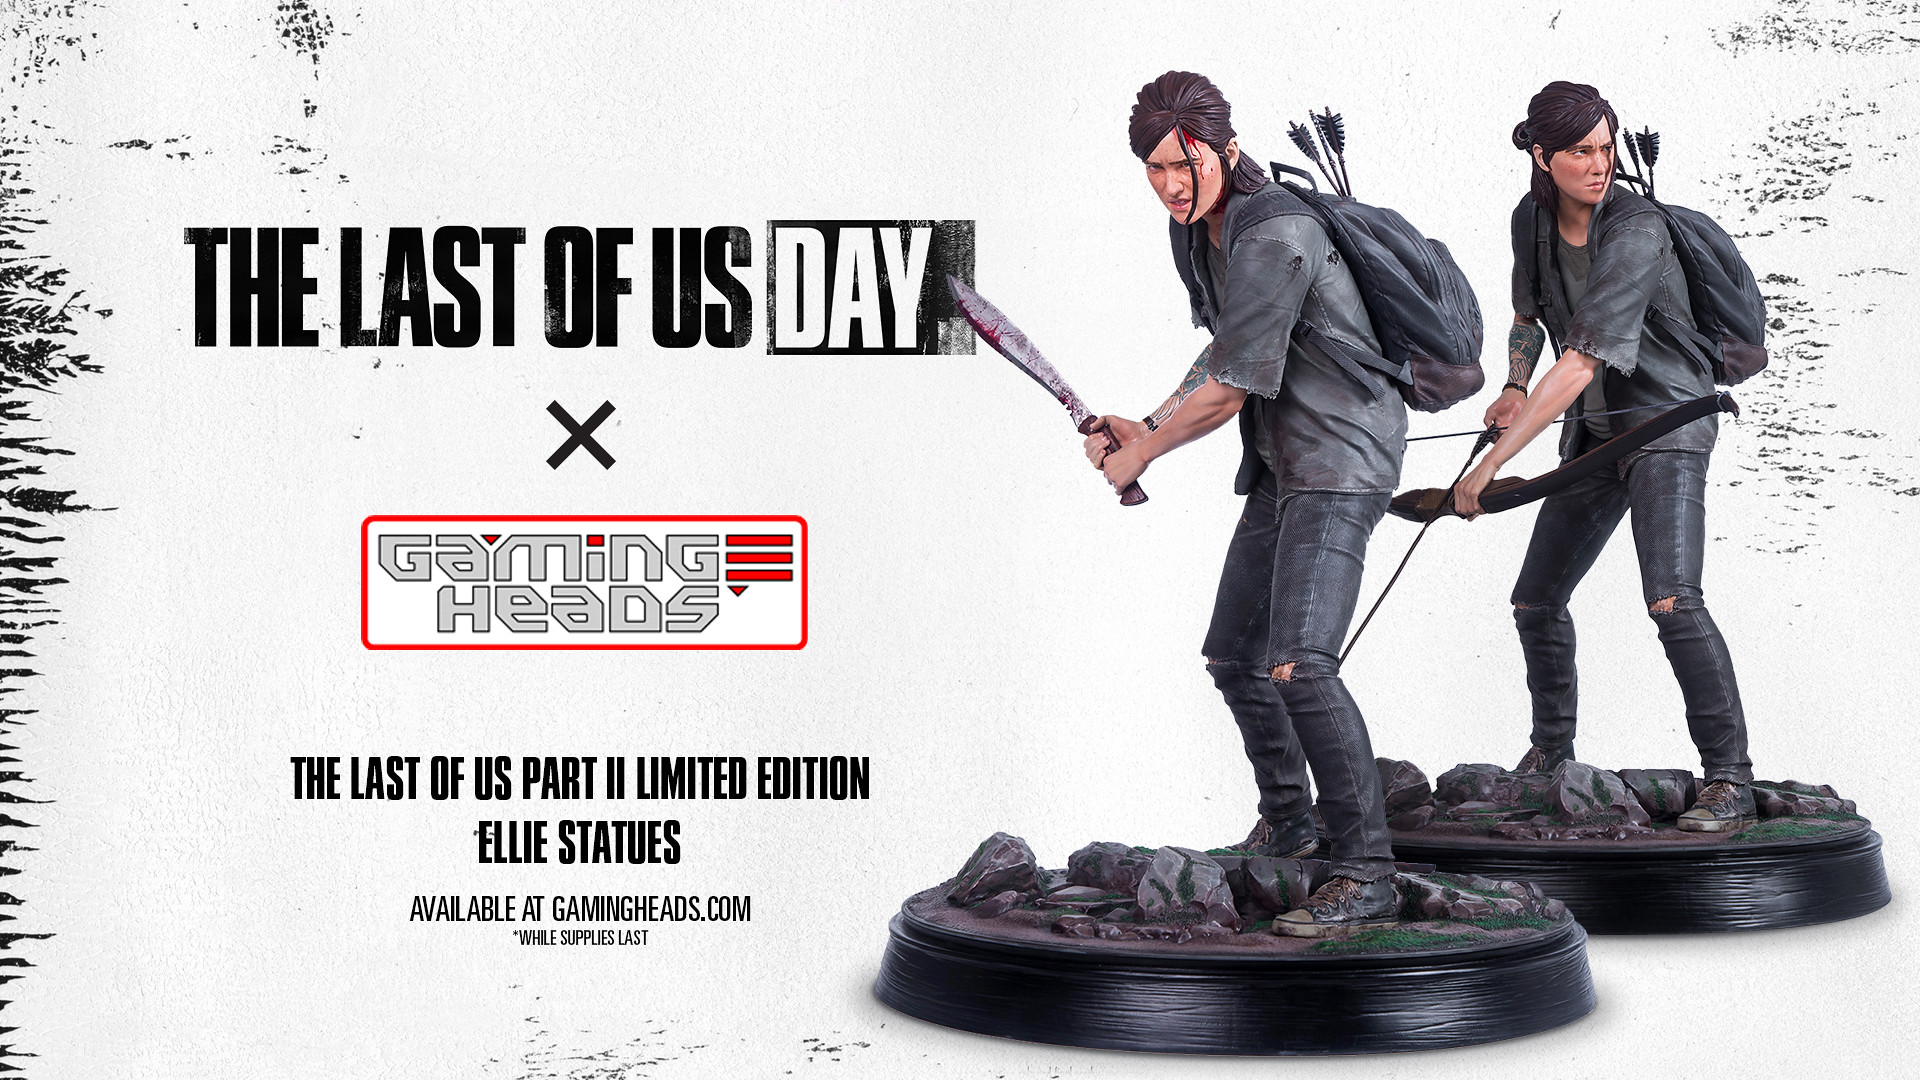 The Last Of Us Day: novità per la giornata dedicata al videogioco 1